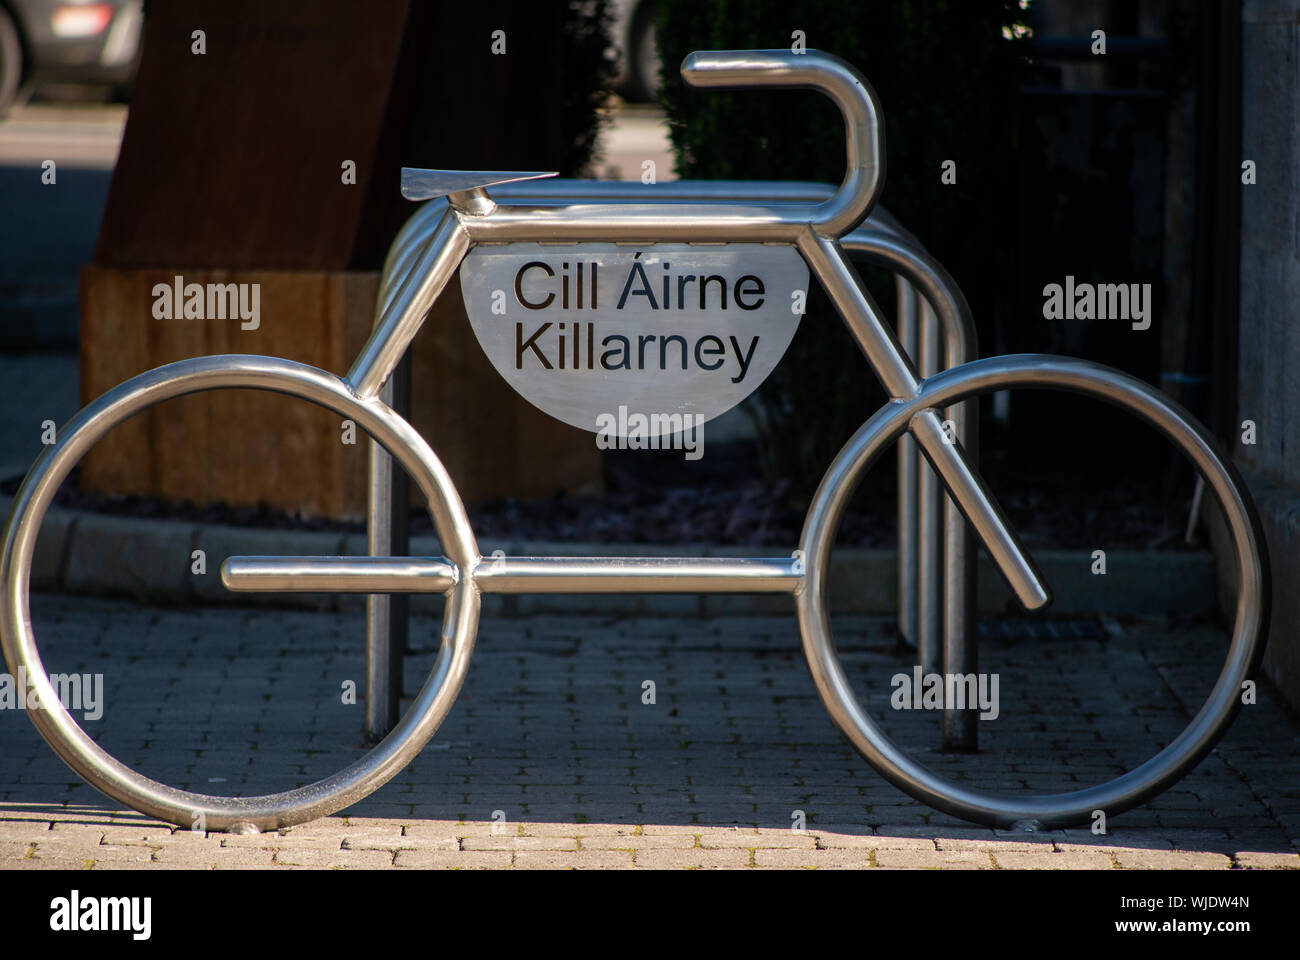 Innovatives Design für Fahrradparkplätze oder Fahrradständer in Fahrradform als städtisches Detail in Killarney oder Cill Airne County Kerry Irland Stockfoto